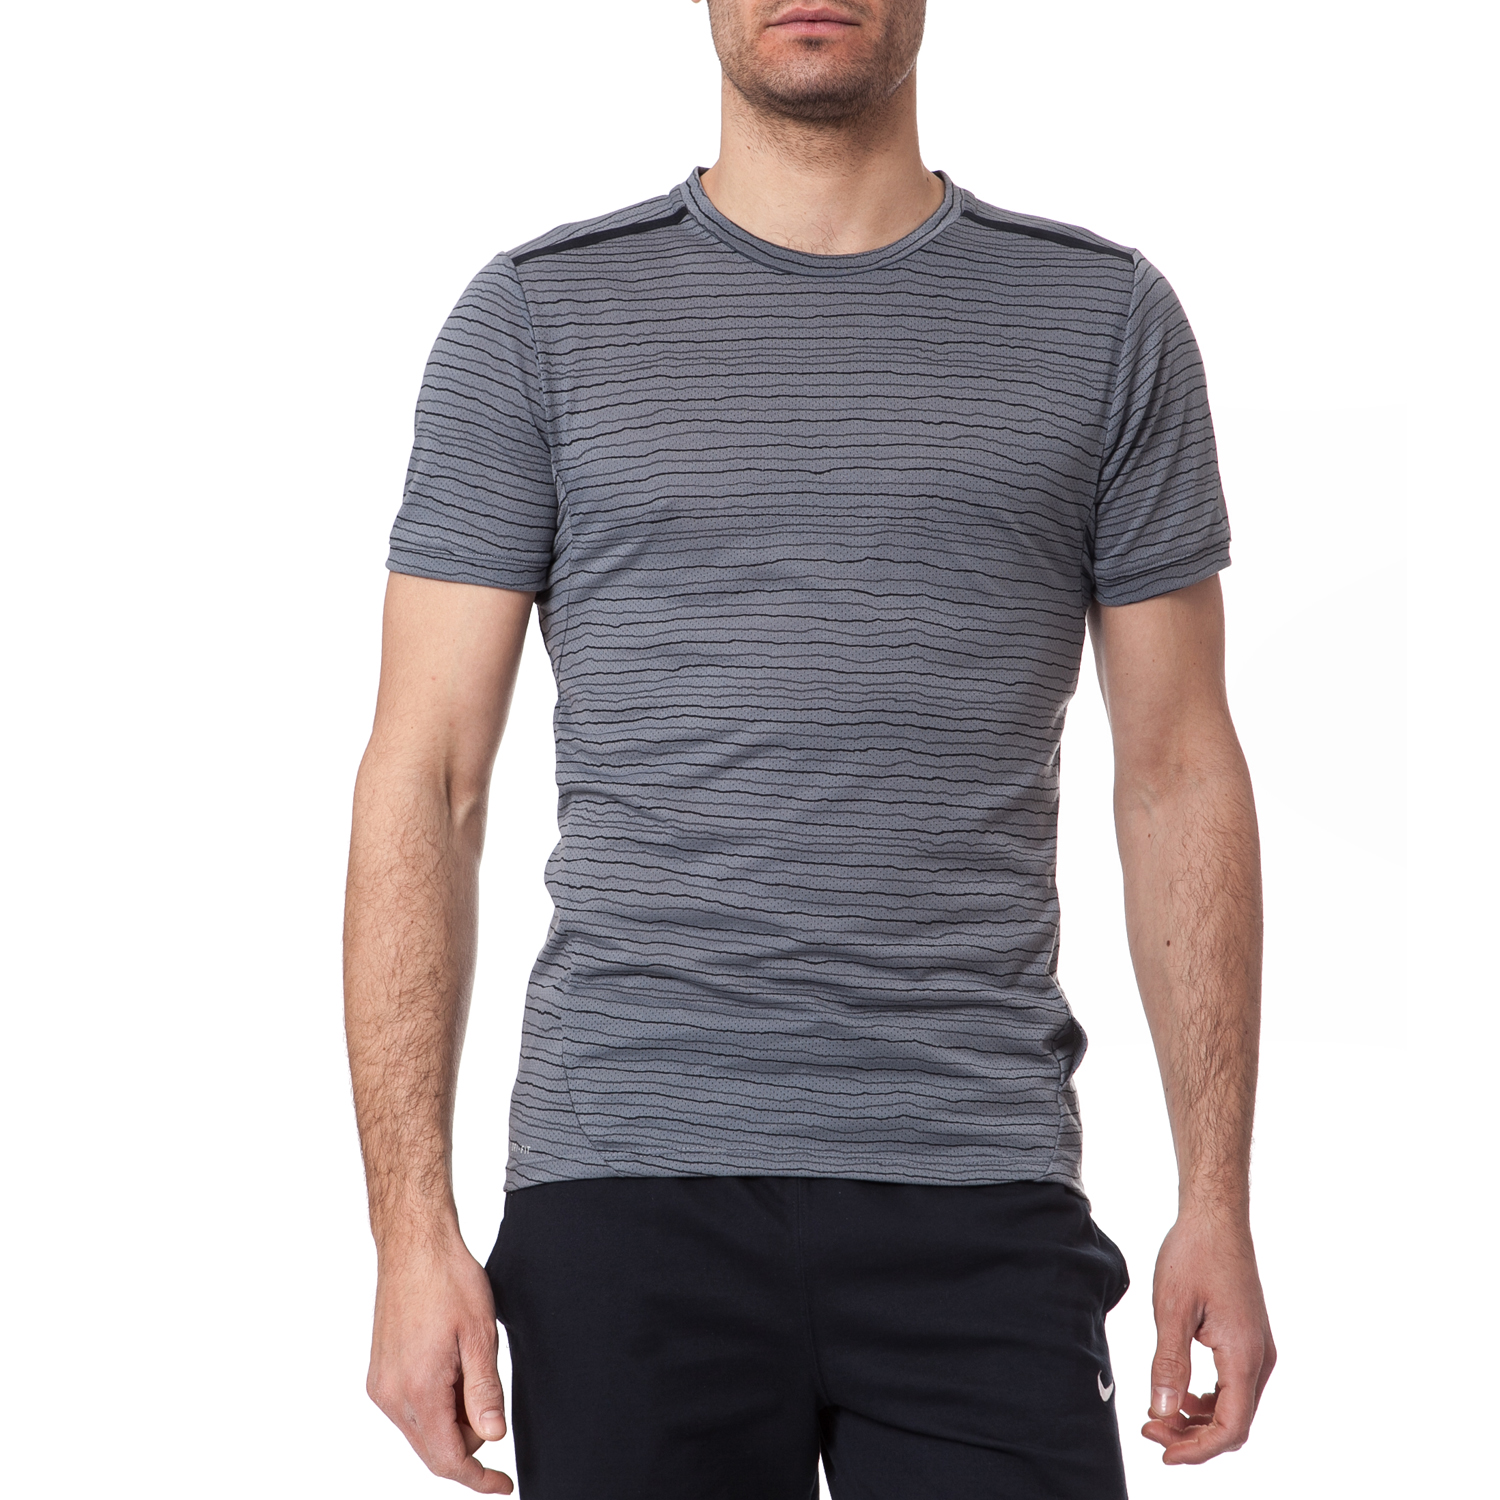 Ανδρικά/Ρούχα/Αθλητικά/T-shirt NIKE - Ανδρική μπλούζα Nike γκρι